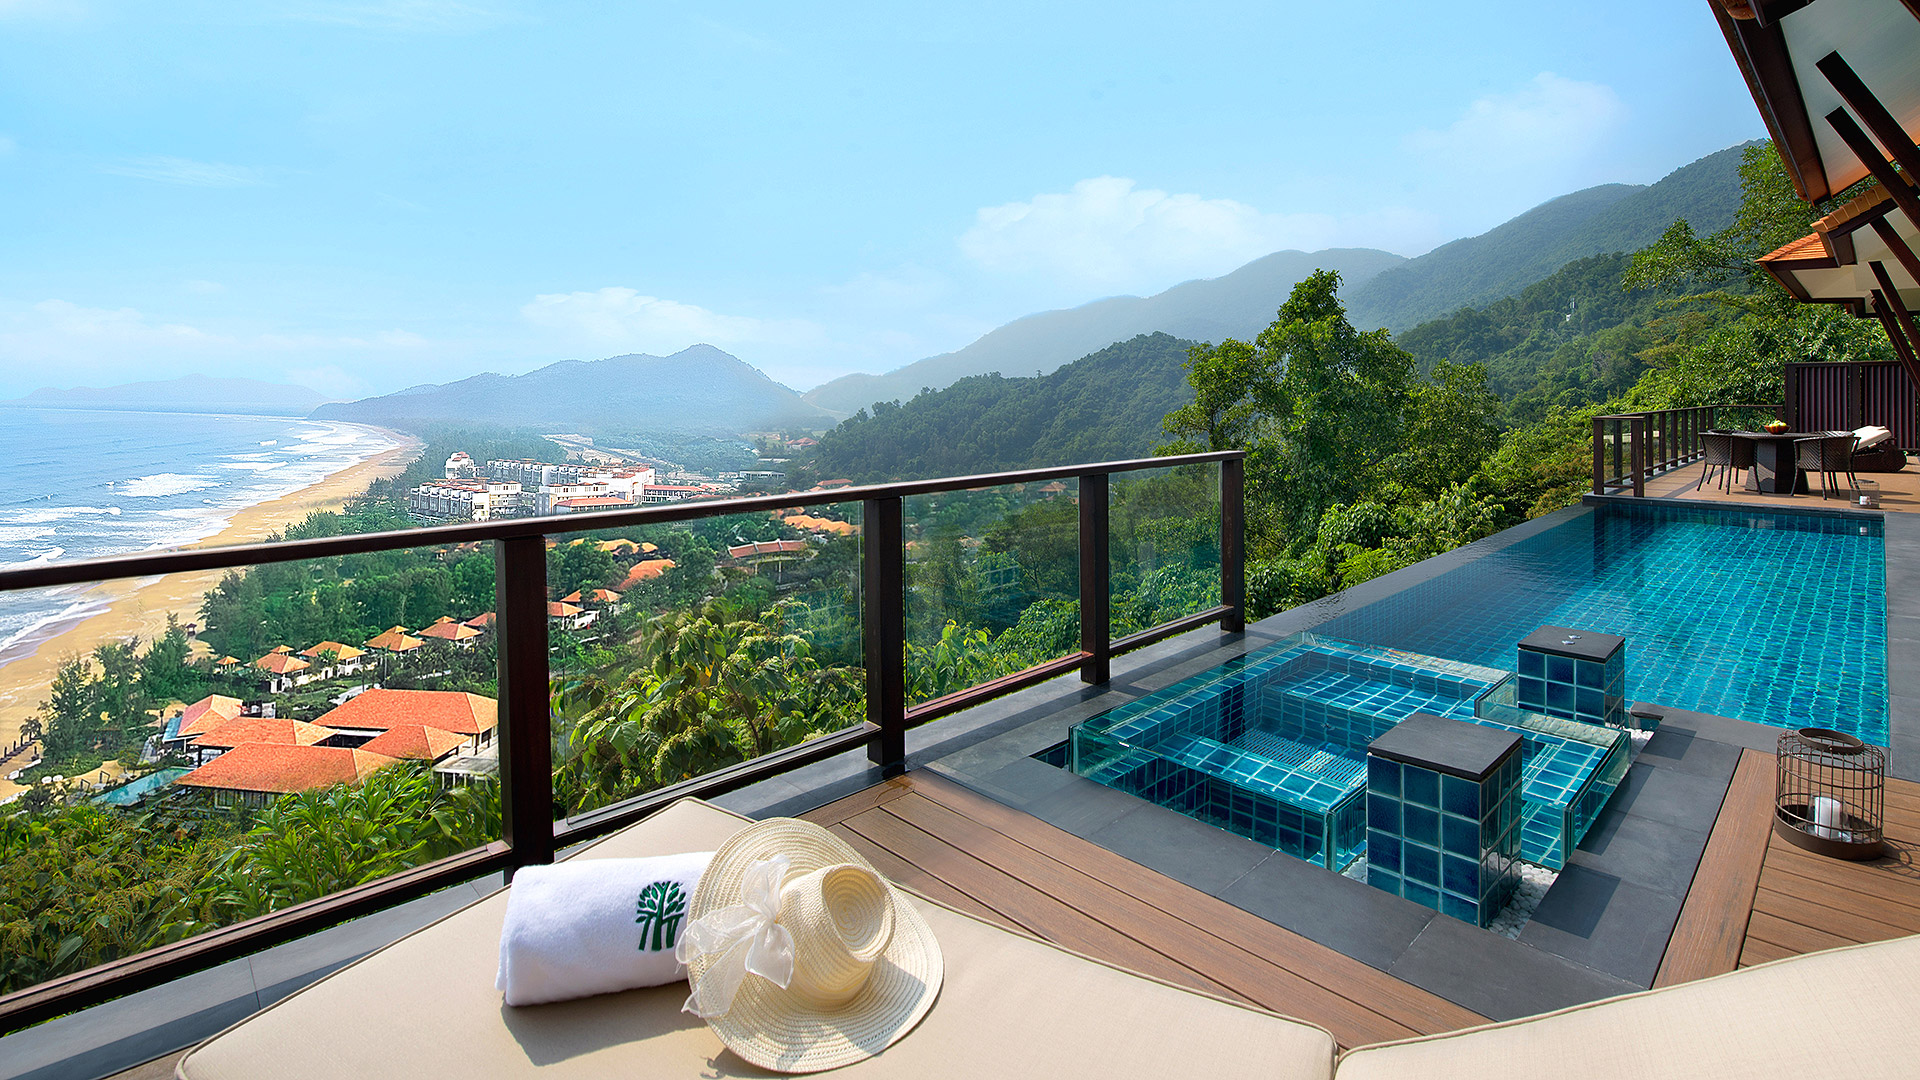 Lạc vào tiên cảnh ở 2 resort tuyệt đẹp xứ Huế: Mỗi nơi một vẻ - mười phân vẹn mười, nhận mưa đánh giá 10/10 trên các ứng dụng đặt phòng - Ảnh 4.